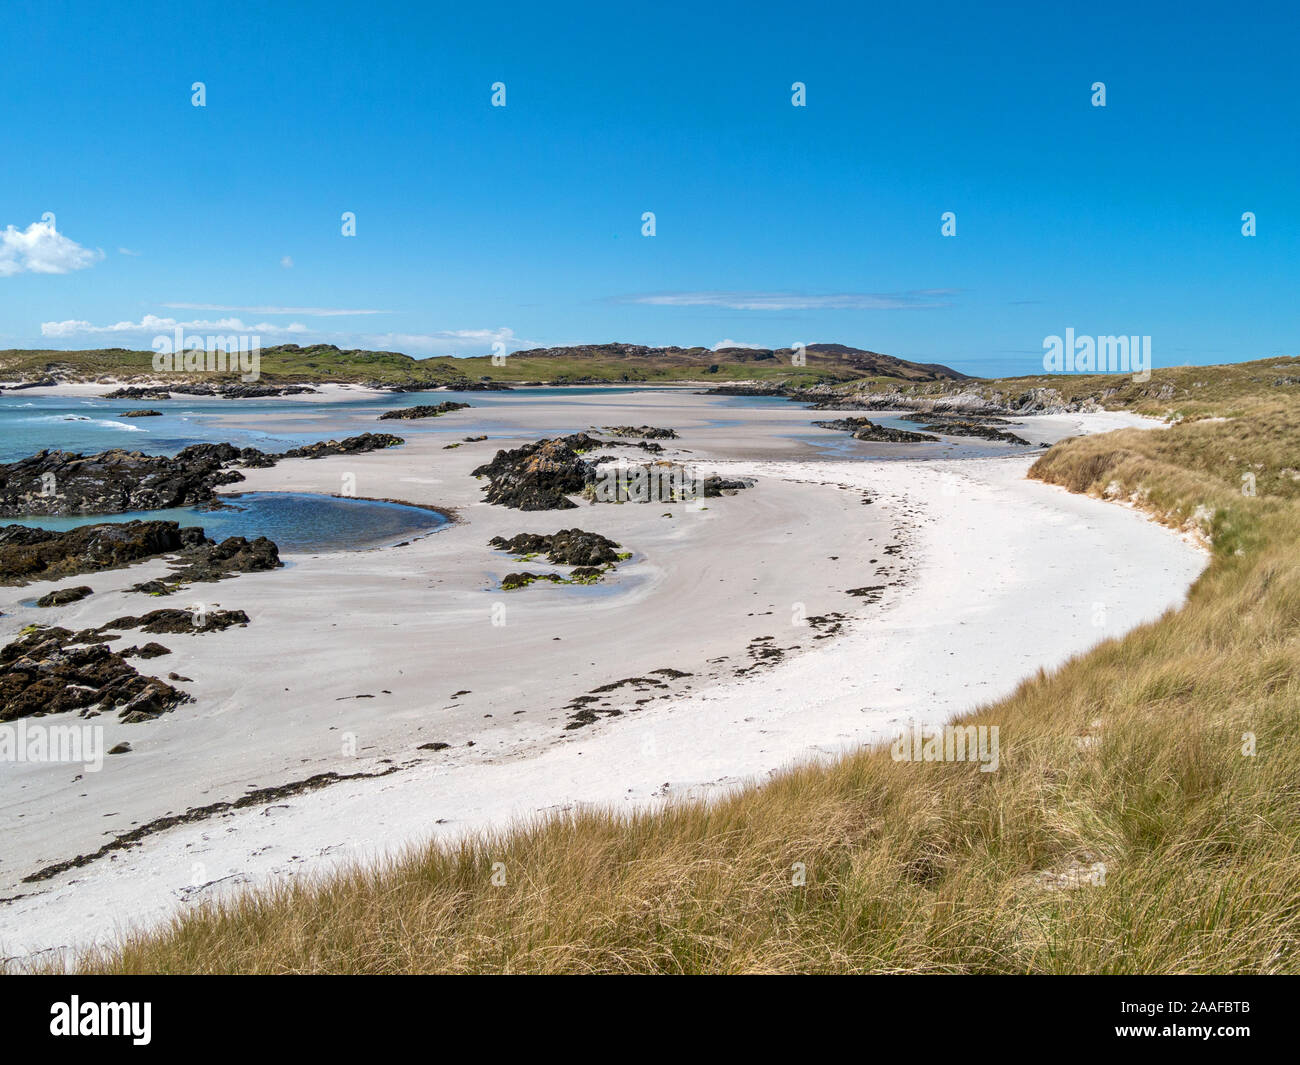 Bella remote, deserte, spiaggia di sabbia nelle vicinanze il trefolo sull'Isola di Colonsay con l'isola di marea di Oronsay nella distanza, Scotland, Regno Unito Foto Stock